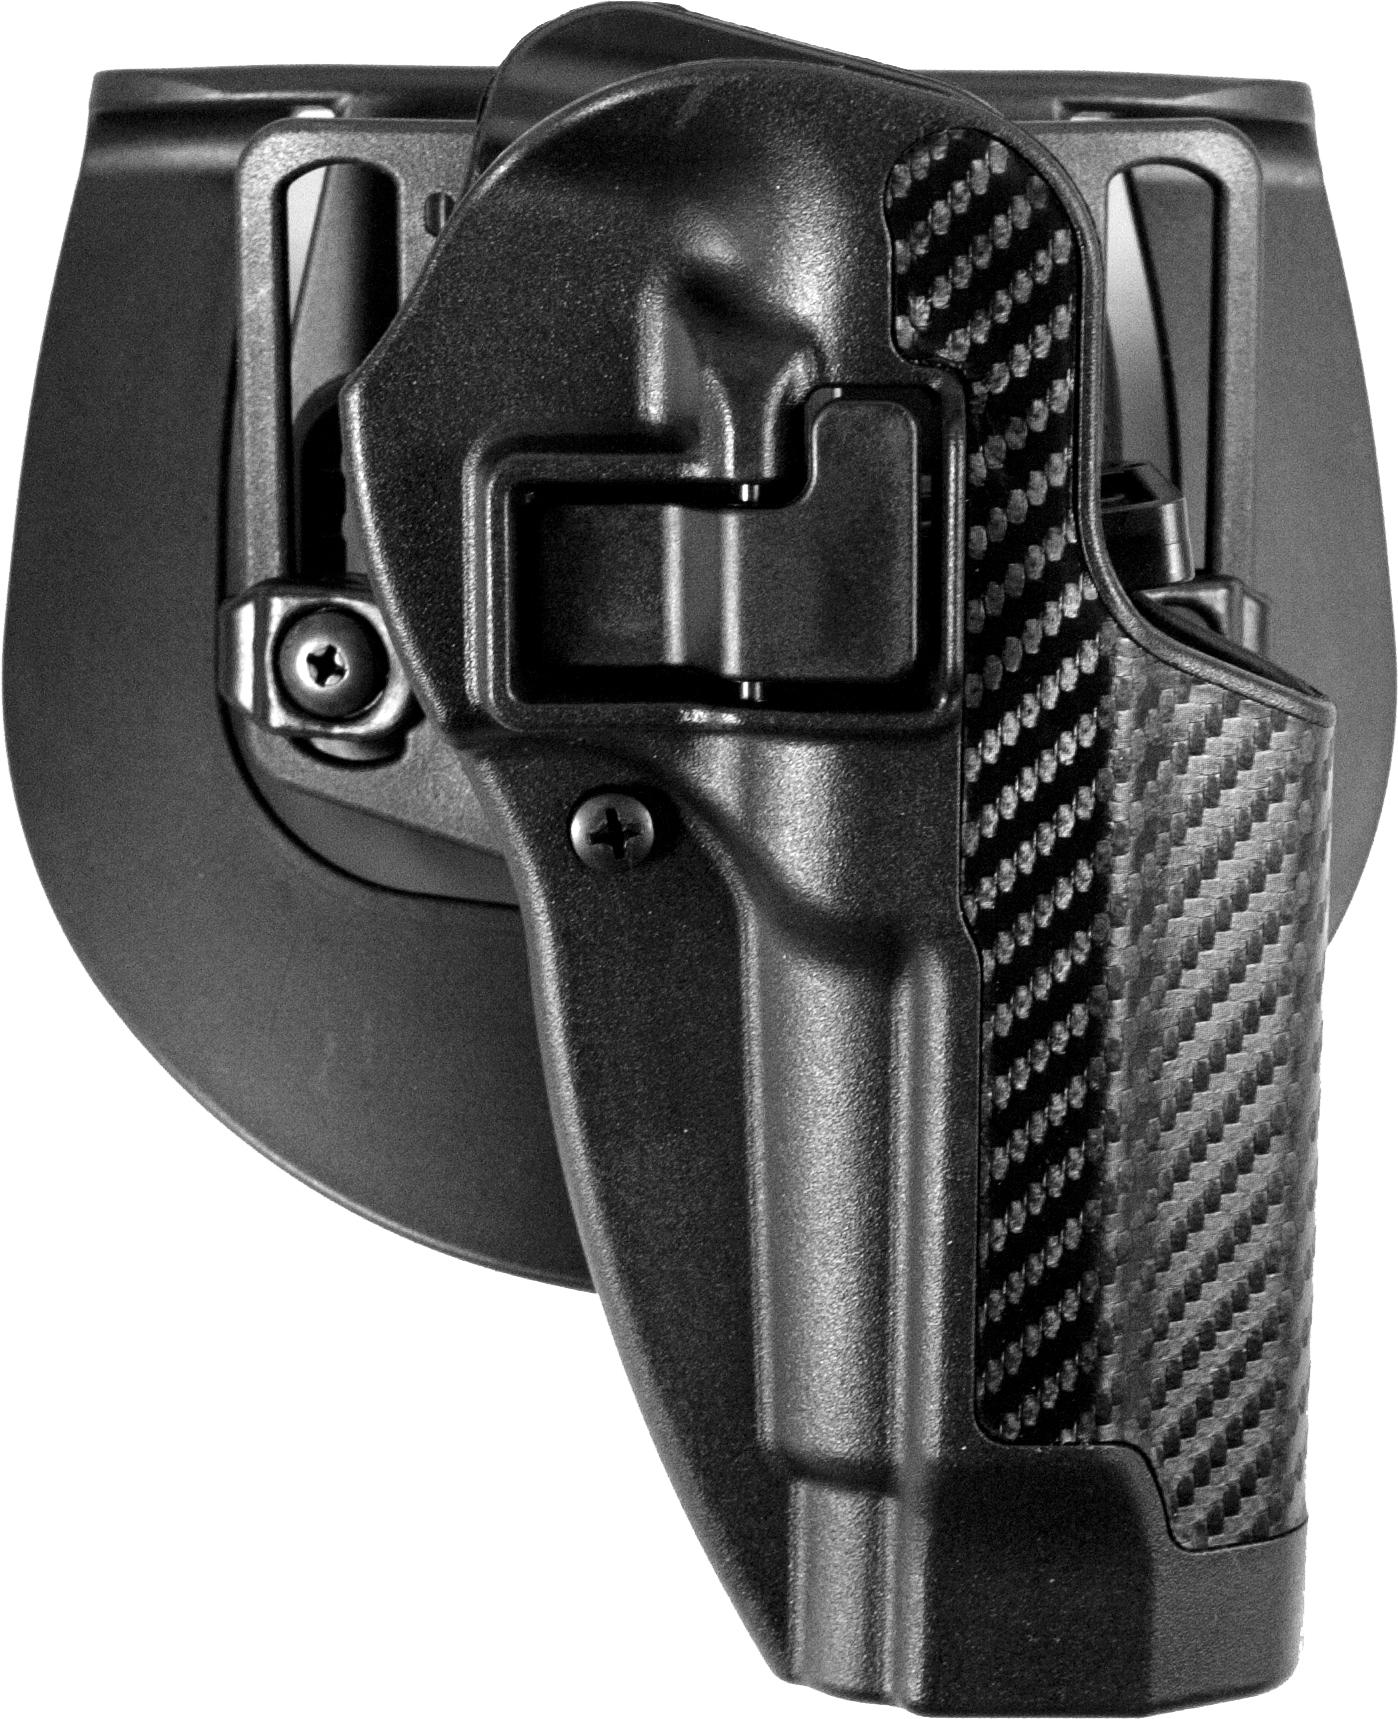 Blackhawk 410002bk-l CQC SERPA Holster Left Hand for Glock 19 23 32 for sale online 